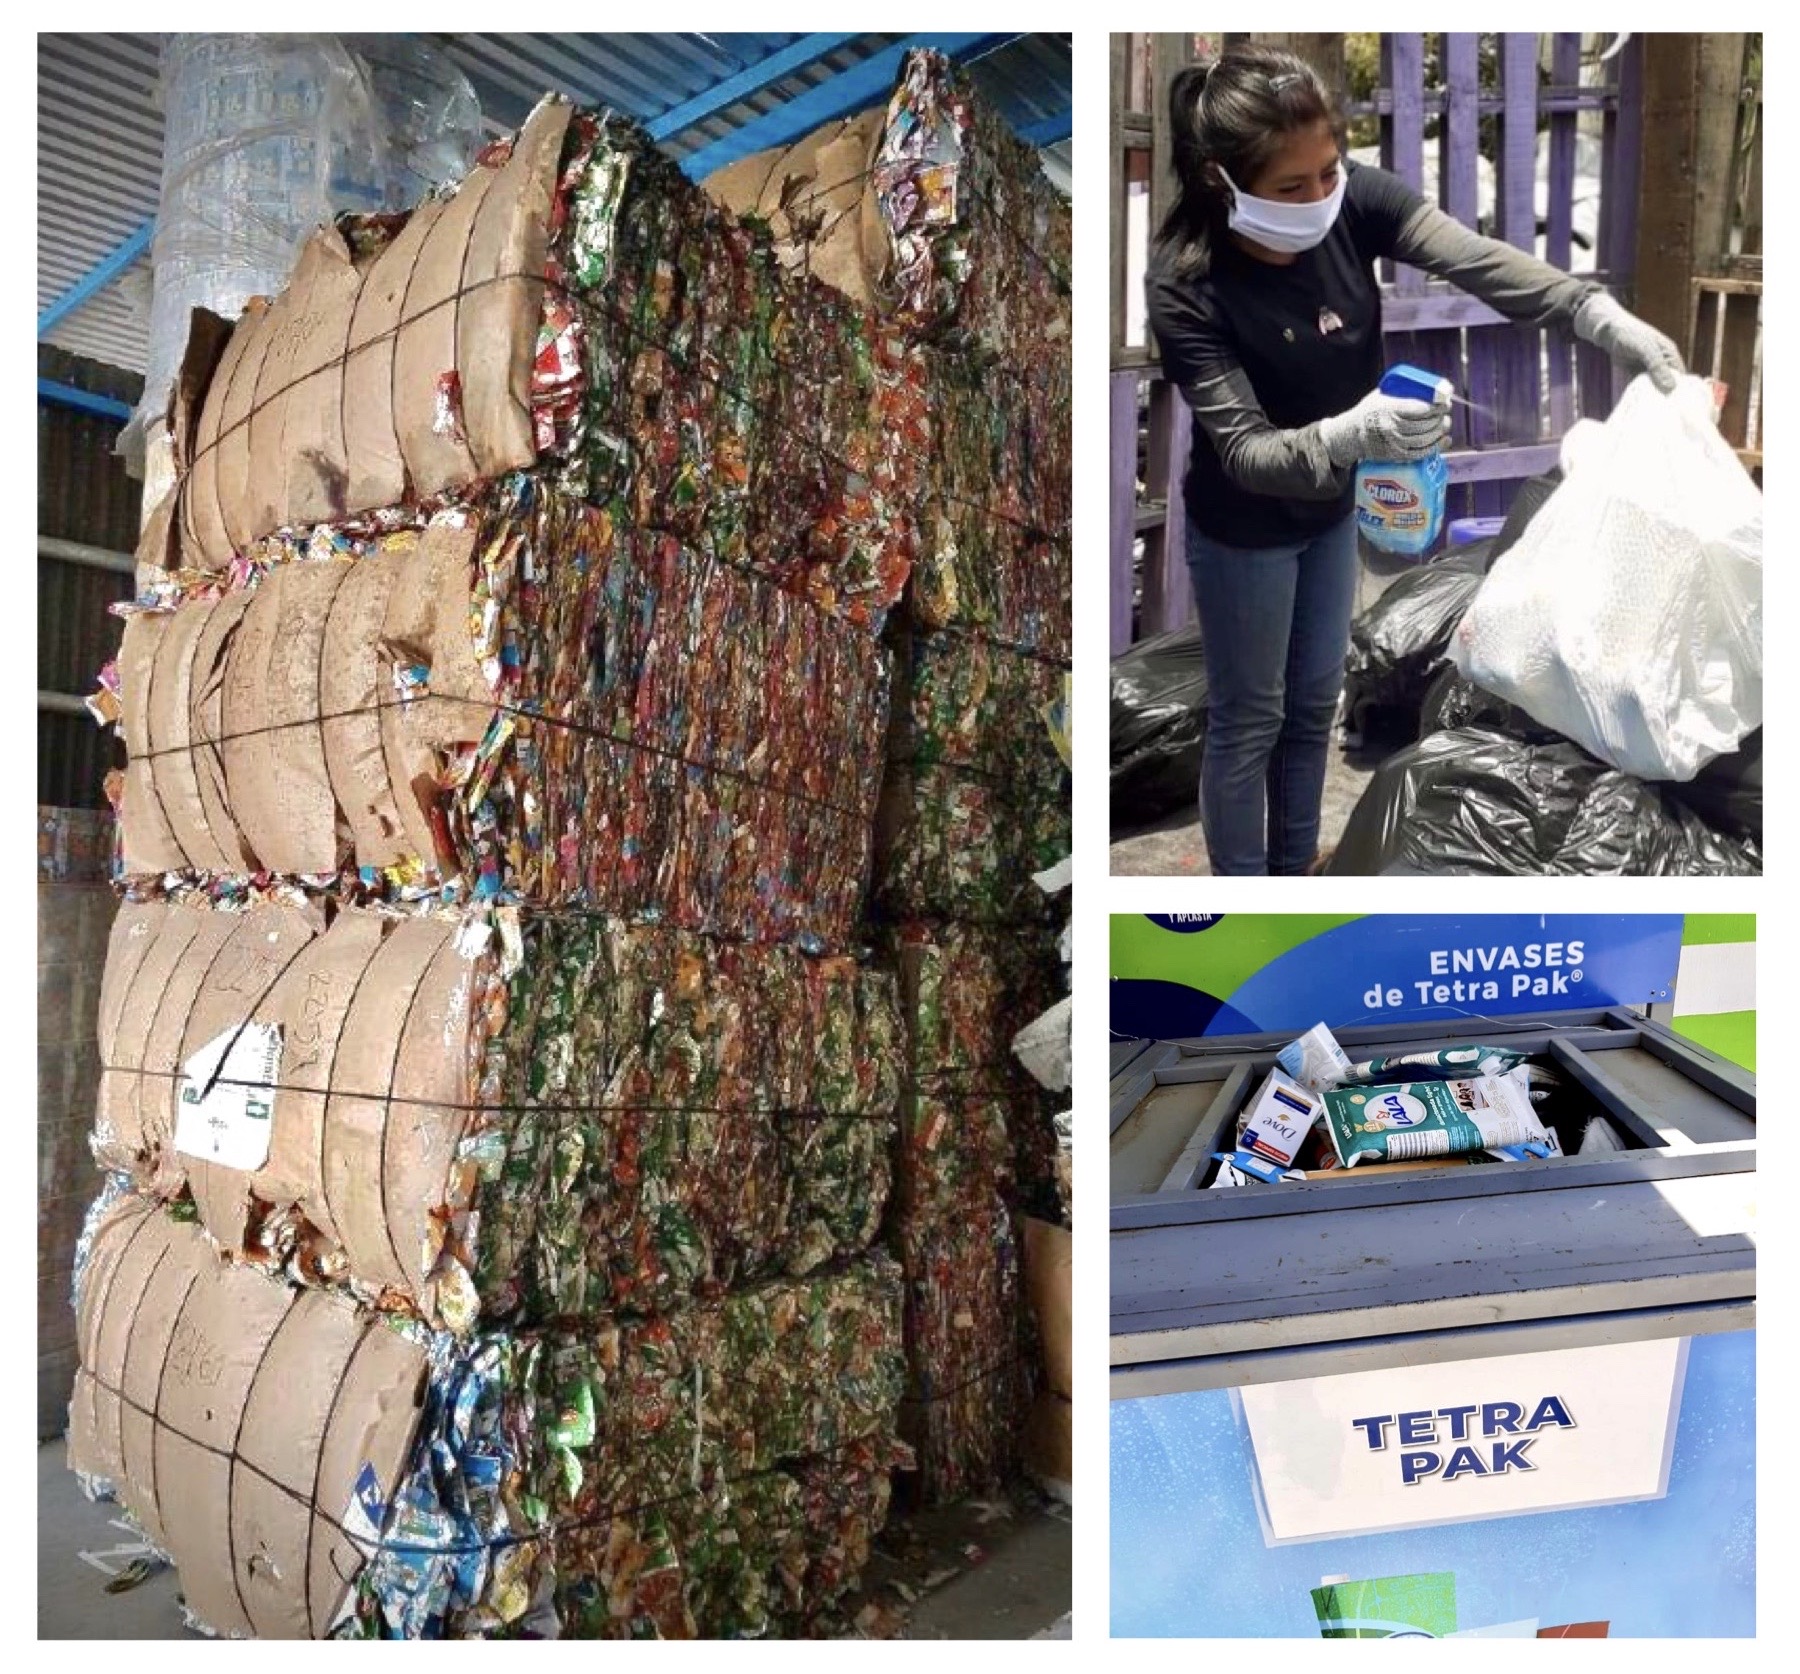 Envases de Tetra Pak® serán recolectados por Green Love para su reciclaje en República Dominicana